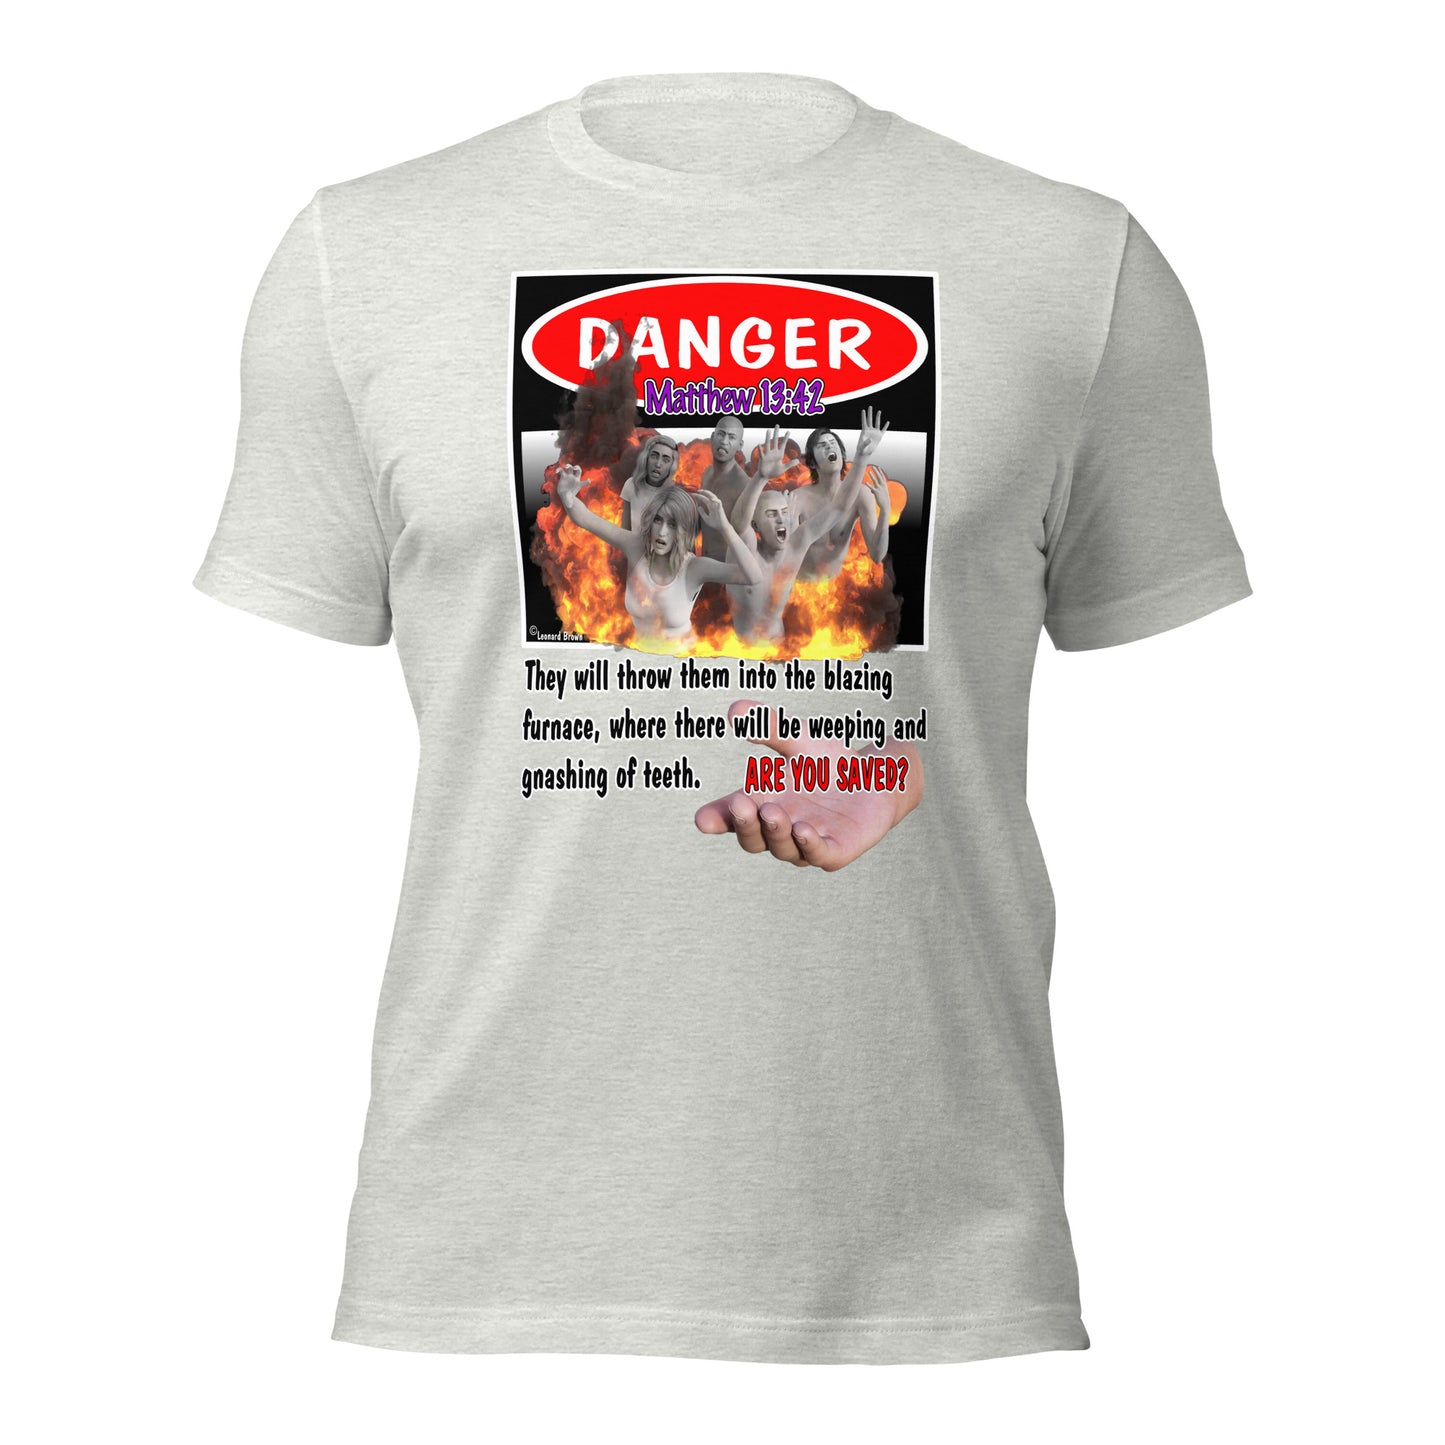 Danger t-shirt